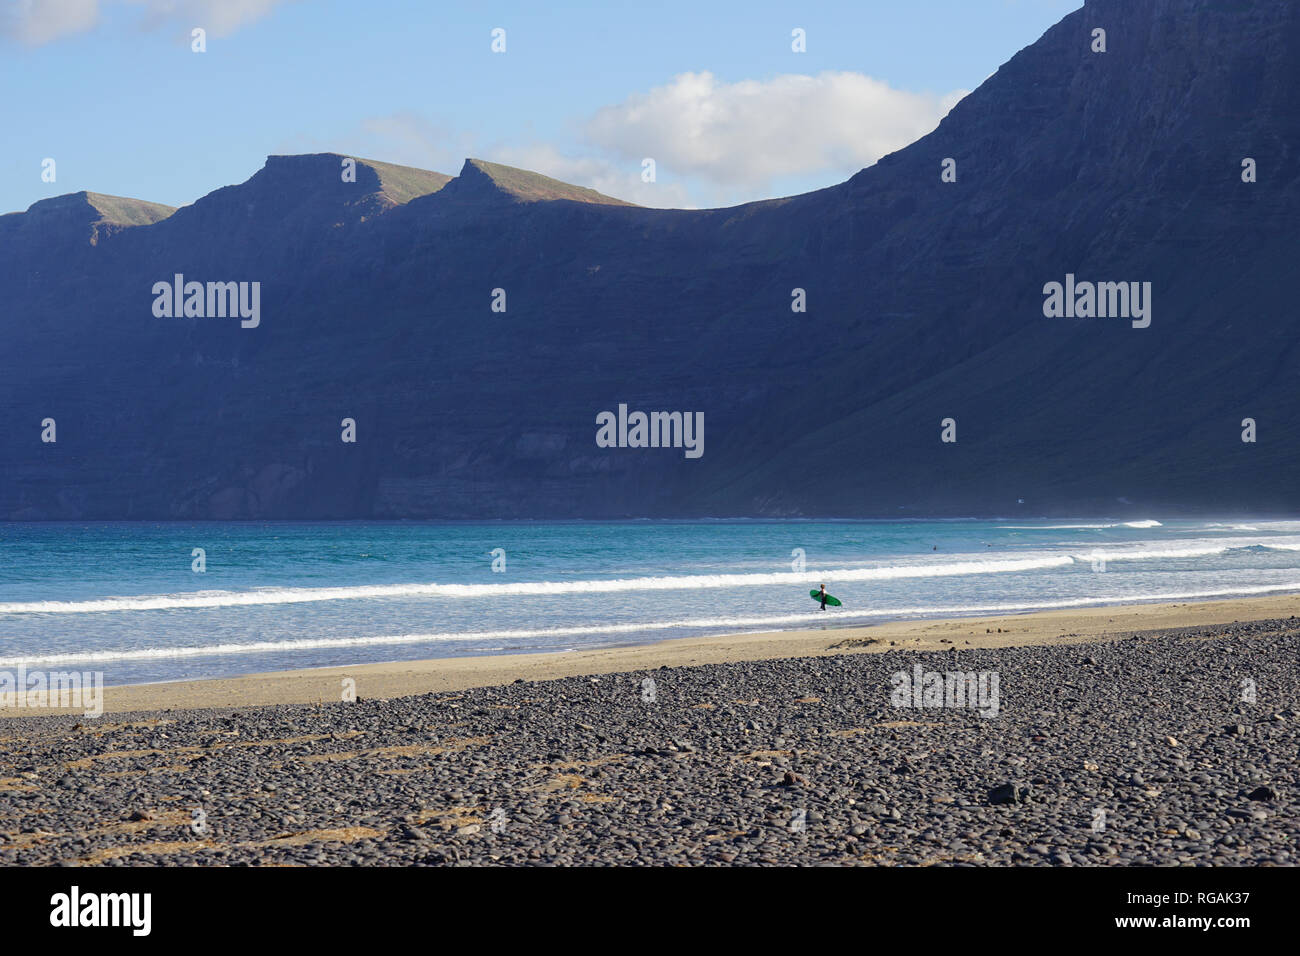 Surfer mit Surfbrett, Playa de Famara, Riscos de Famara, Lanzarote, Kanarische Inseln, Spanien Banque D'Images